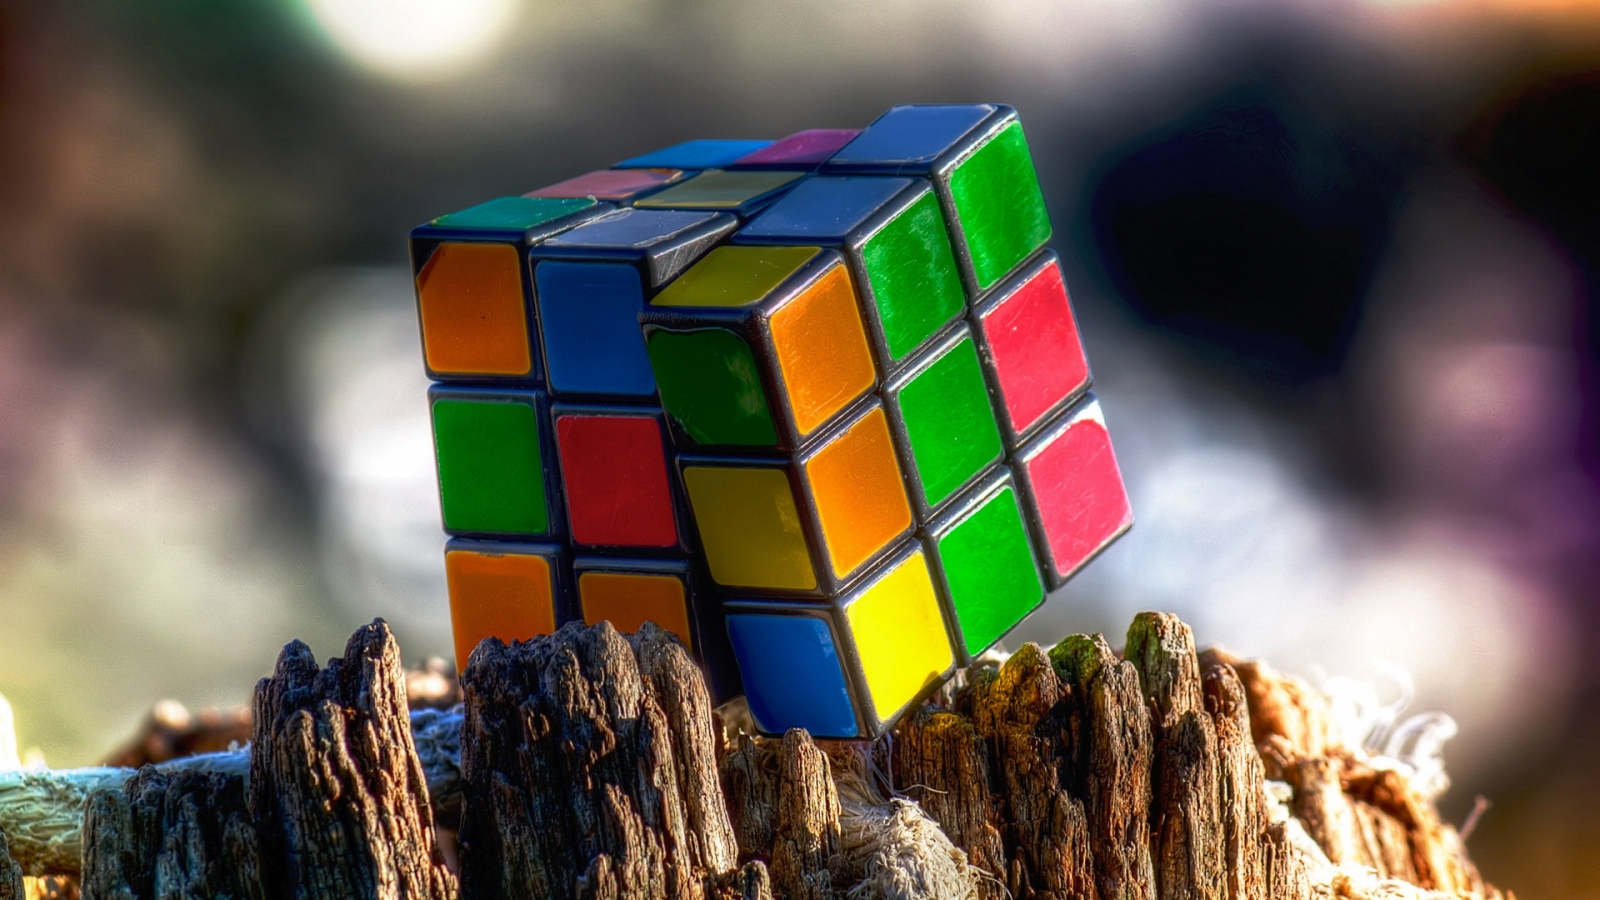 Rubiks Cube for 1600 x 900 HDTV resolution